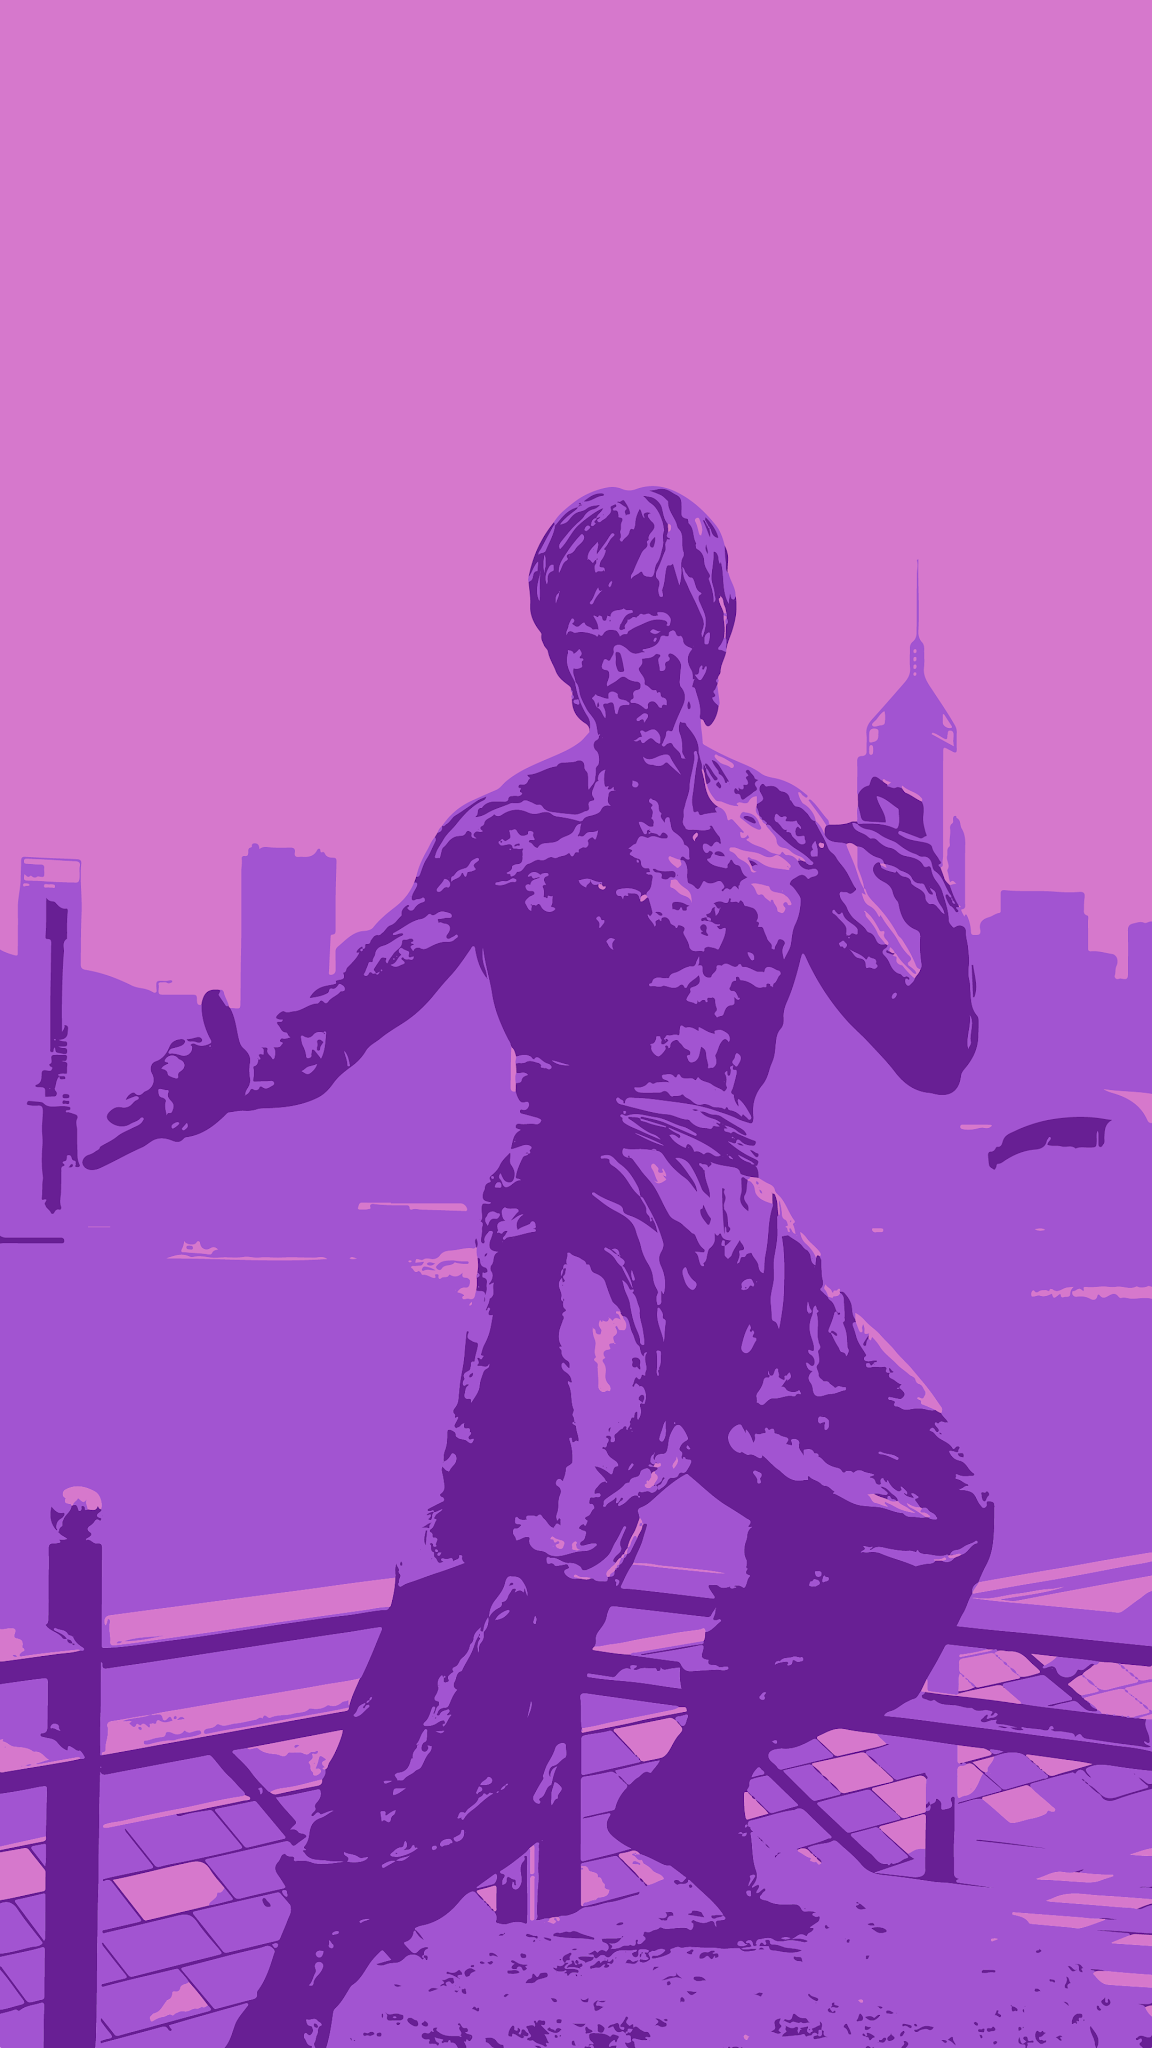 Fondos de Pantalla De la Década de 1980, Bruce Lee, Arte, La Estética,  Animación, Imágenes y Fotos Gratis